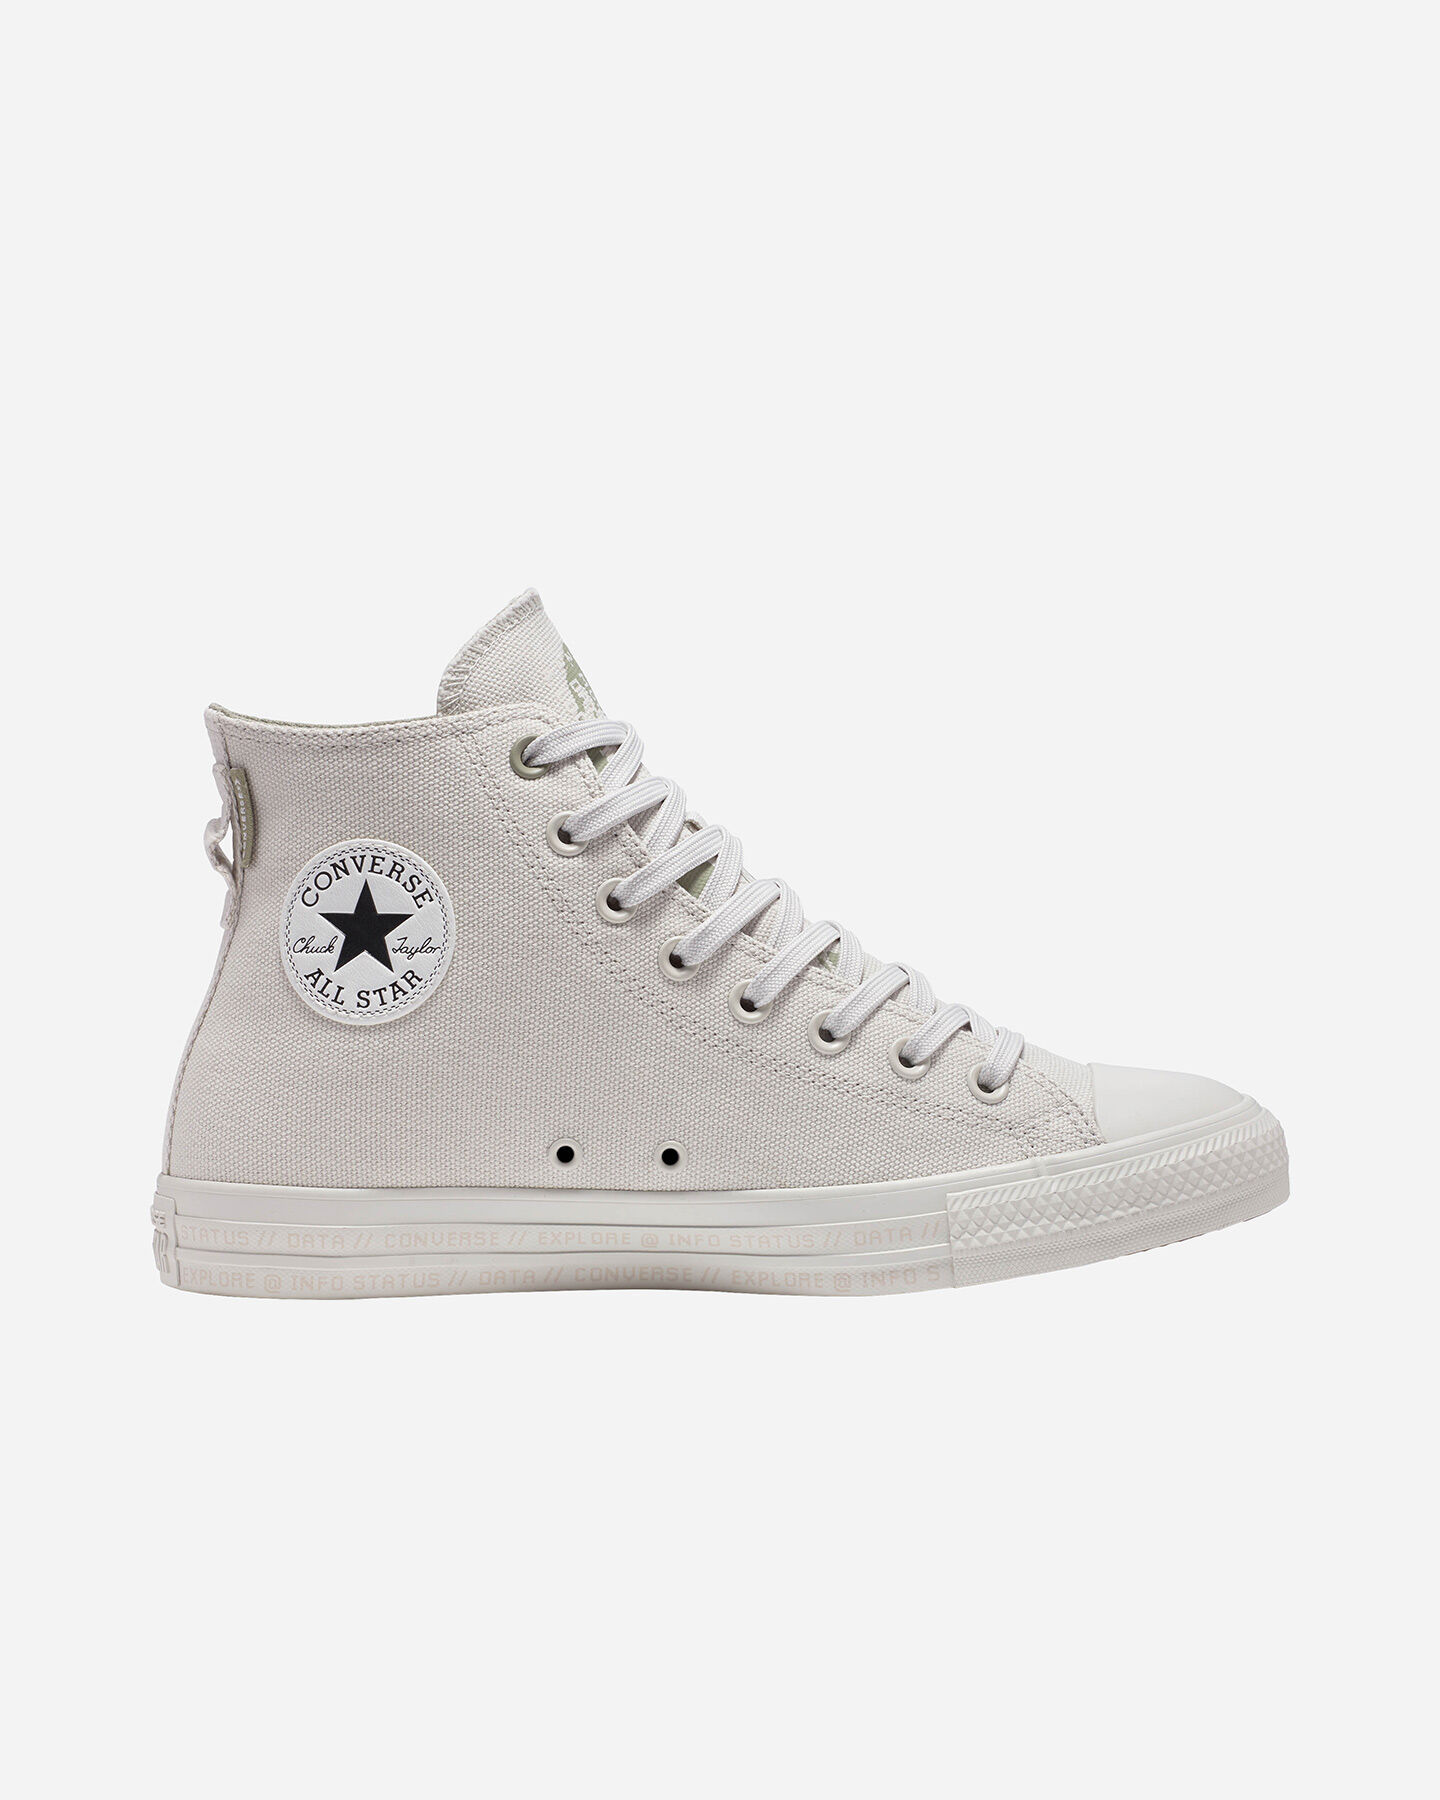  Scarpe sneakers CONVERSE CHUCK TAYLOR ALL STAR HI M S5480503|185|11 scatto 0